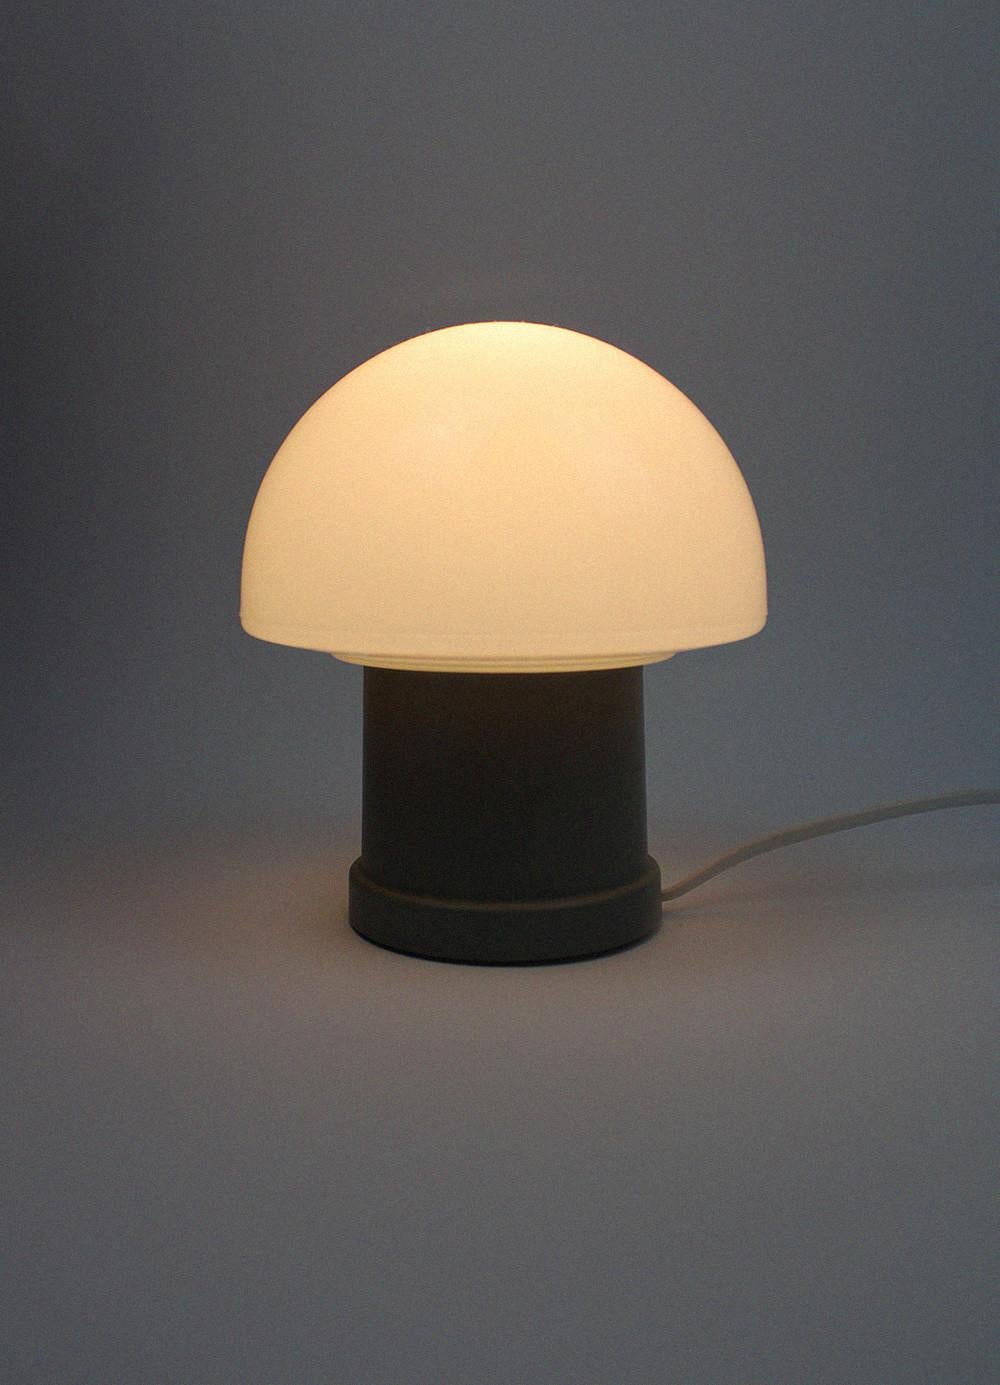 Cette lampe de bureau ou de table divertissante du fabricant belge MASSIVE crée immédiatement une atmosphère confortable et ludique grâce à sa forme de champignon en opaline. La base de tonalité grise est en plastique et donne immédiatement vie à